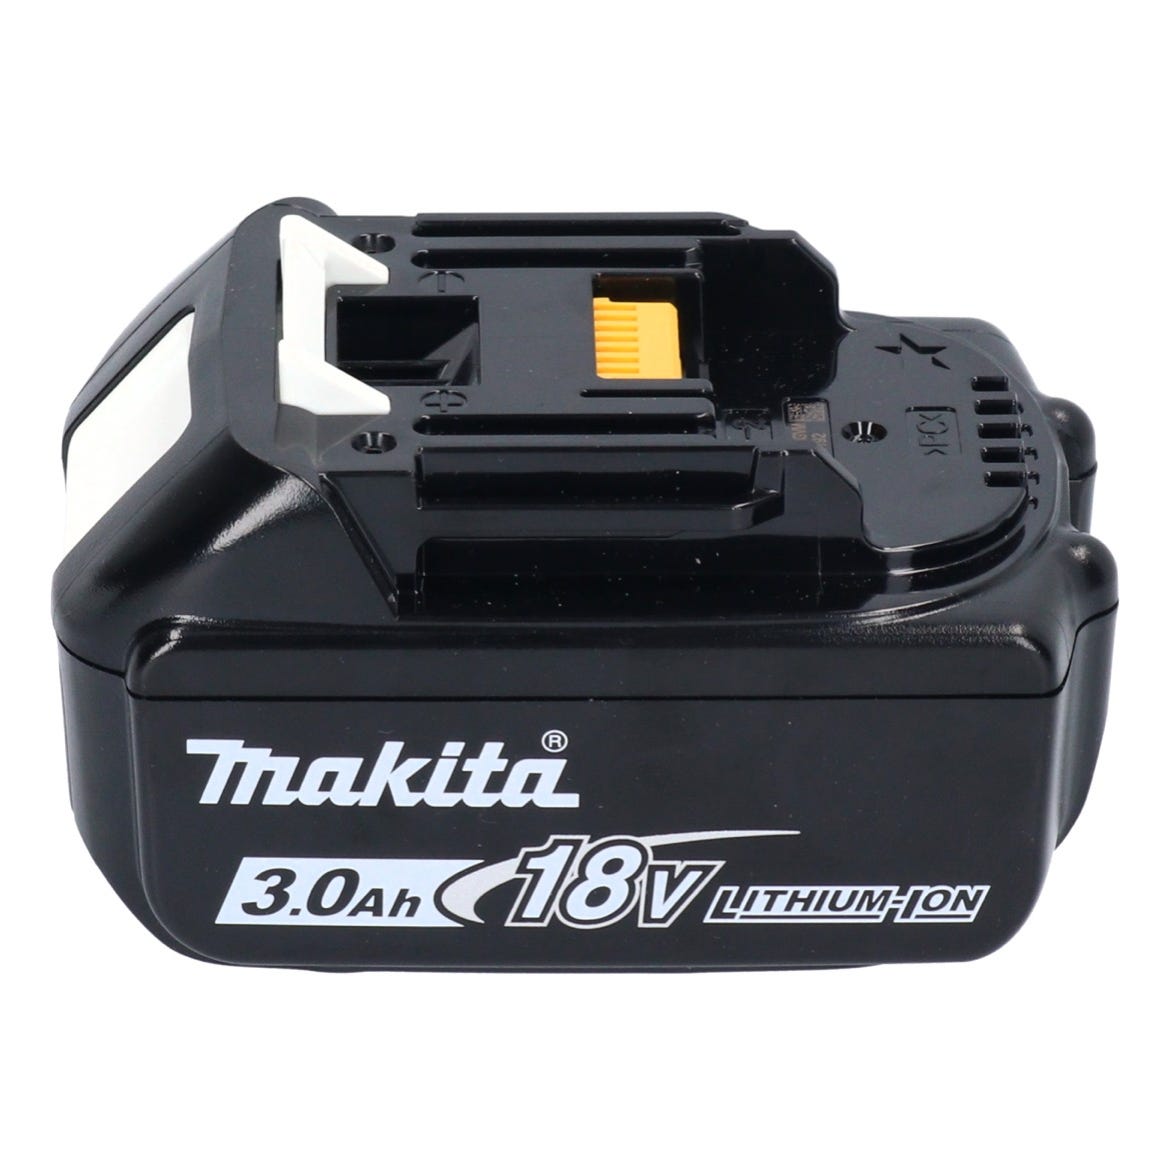 Makita DHR 183 F1J marteau perforateur sans fil 18 V 1,7 J SDS plus brushless + 1x batterie 3,0 Ah + Makpac - sans kit chargeur 3